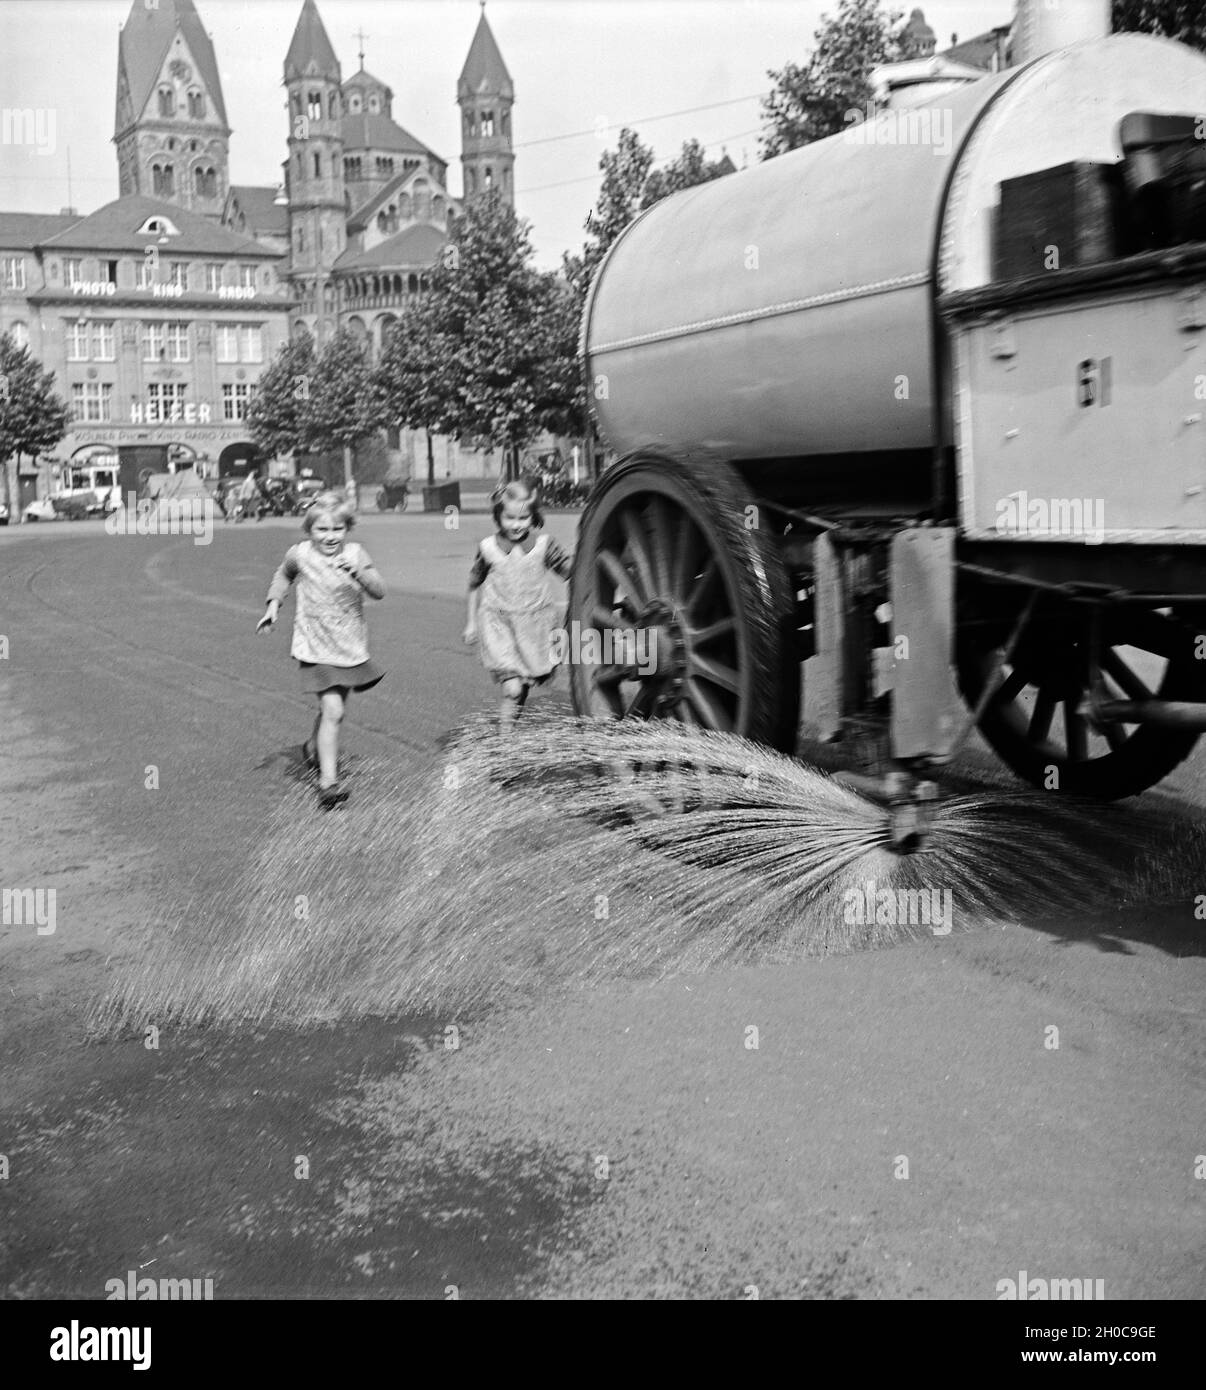 Kinder laufen dem Stadtreinigungswagen hinterher, der den zentralen Platz in Köln, den Neumarkt, naß säubert, 1930er Jahre. Kinder haben Spaß, während die öffentliche Reinigung Duschen der zentralen Platz von Köln, der Neumarkt, 1930er Jahre. Stockfoto